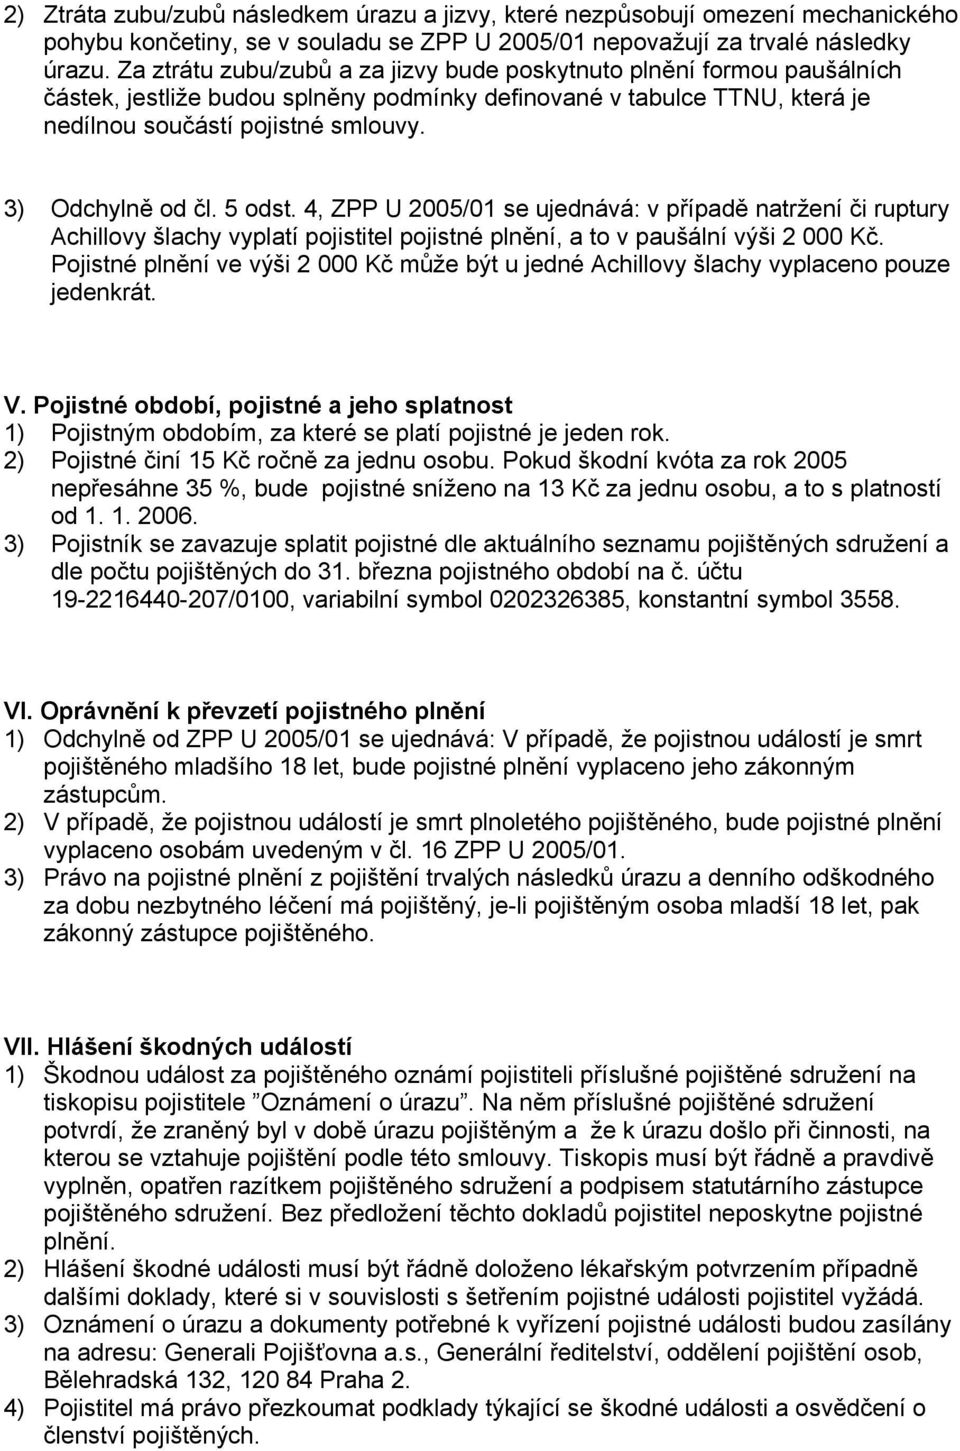 3) Odchylně od čl. 5 odst. 4, ZPP U 2005/01 se ujednává: v případě natržení či ruptury Achillovy šlachy vyplatí pojistitel pojistné plnění, a to v paušální výši 2 000 Kč.